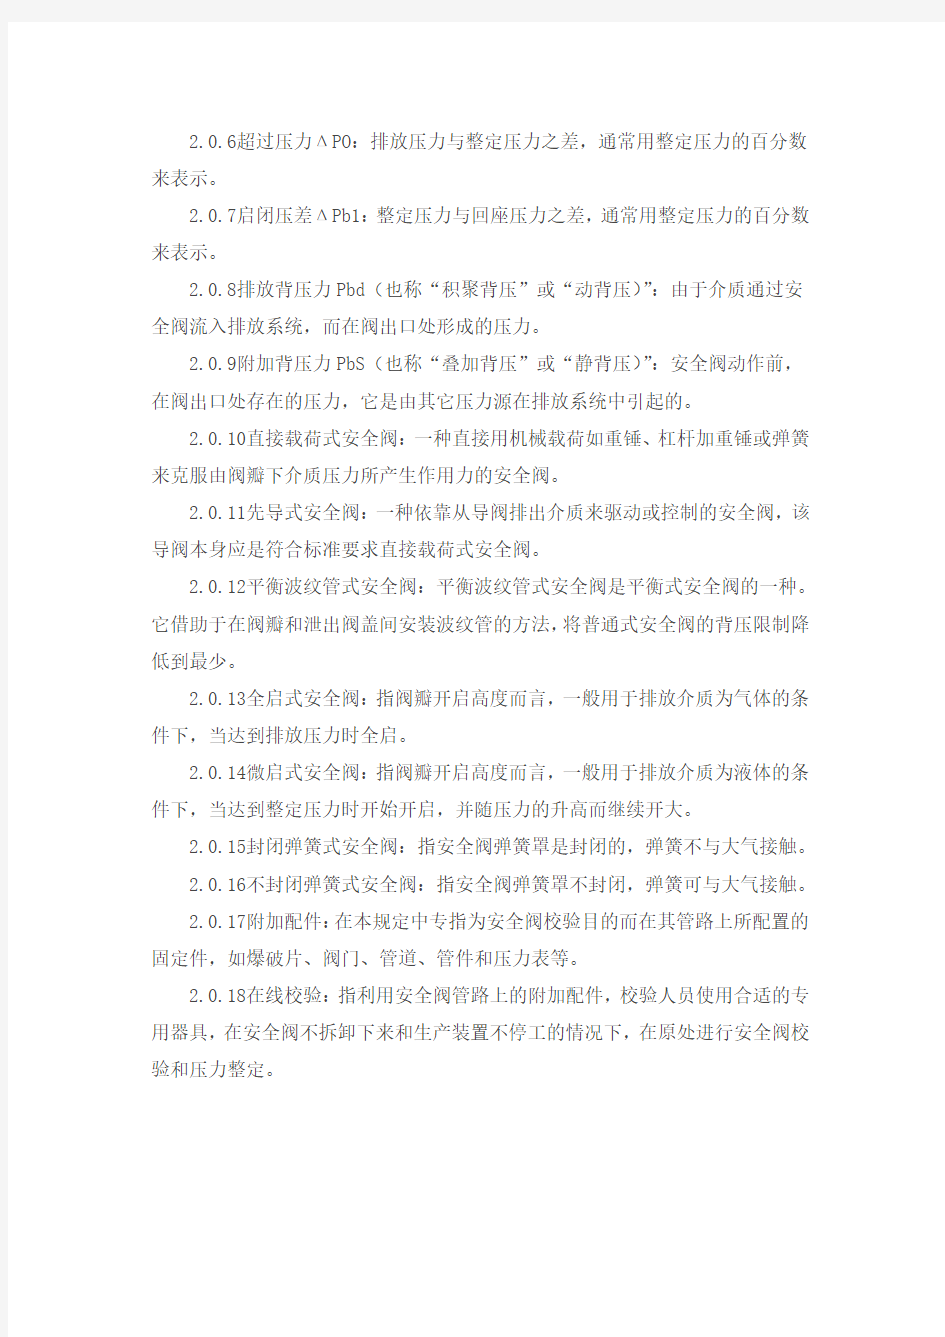 中国石化集团公司安全阀设置规定